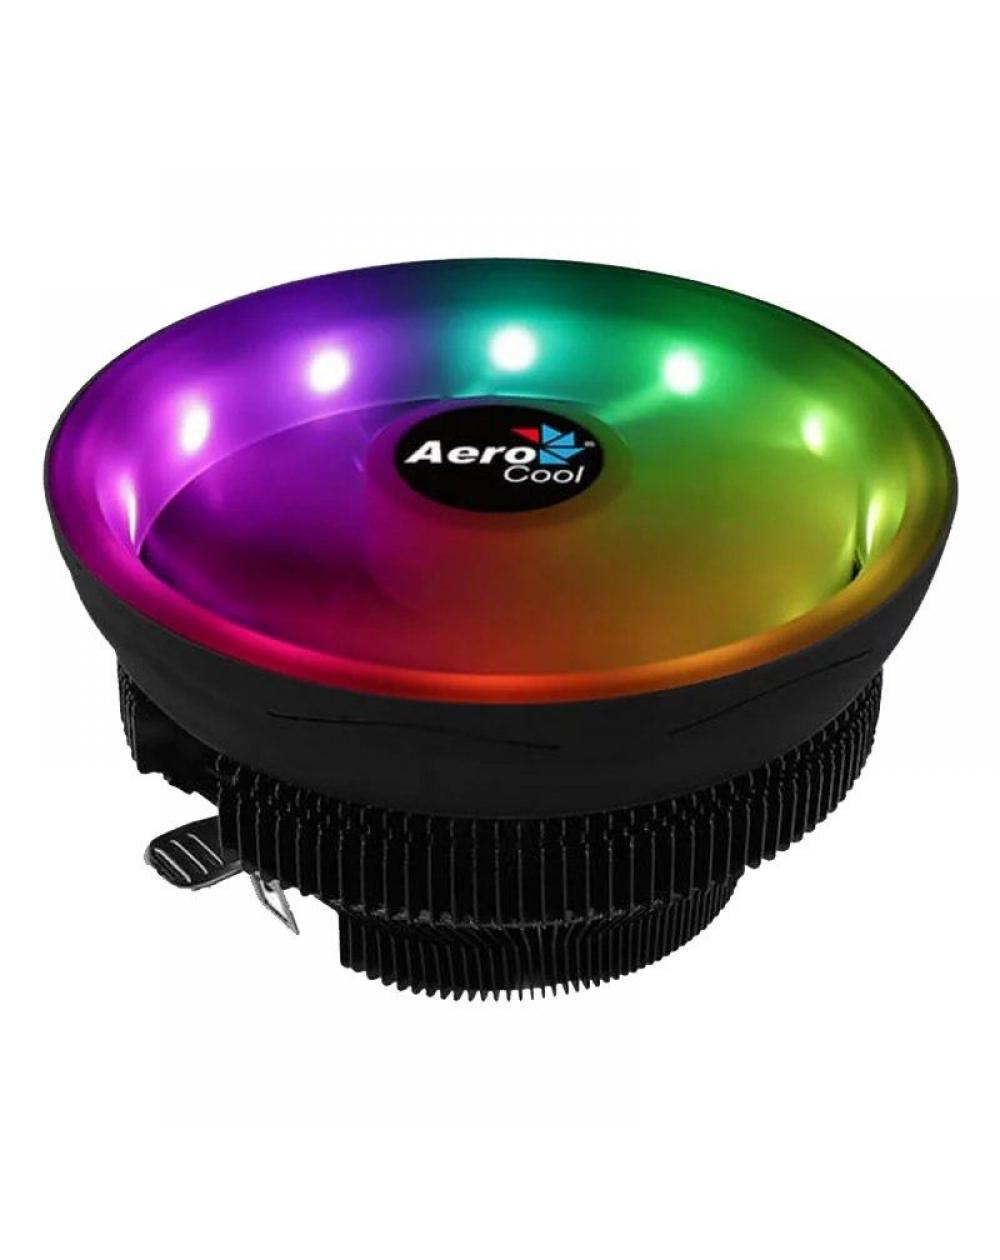 Ventilador con Disipador Aerocool Coreplus/ 12 cm - Imagen 1